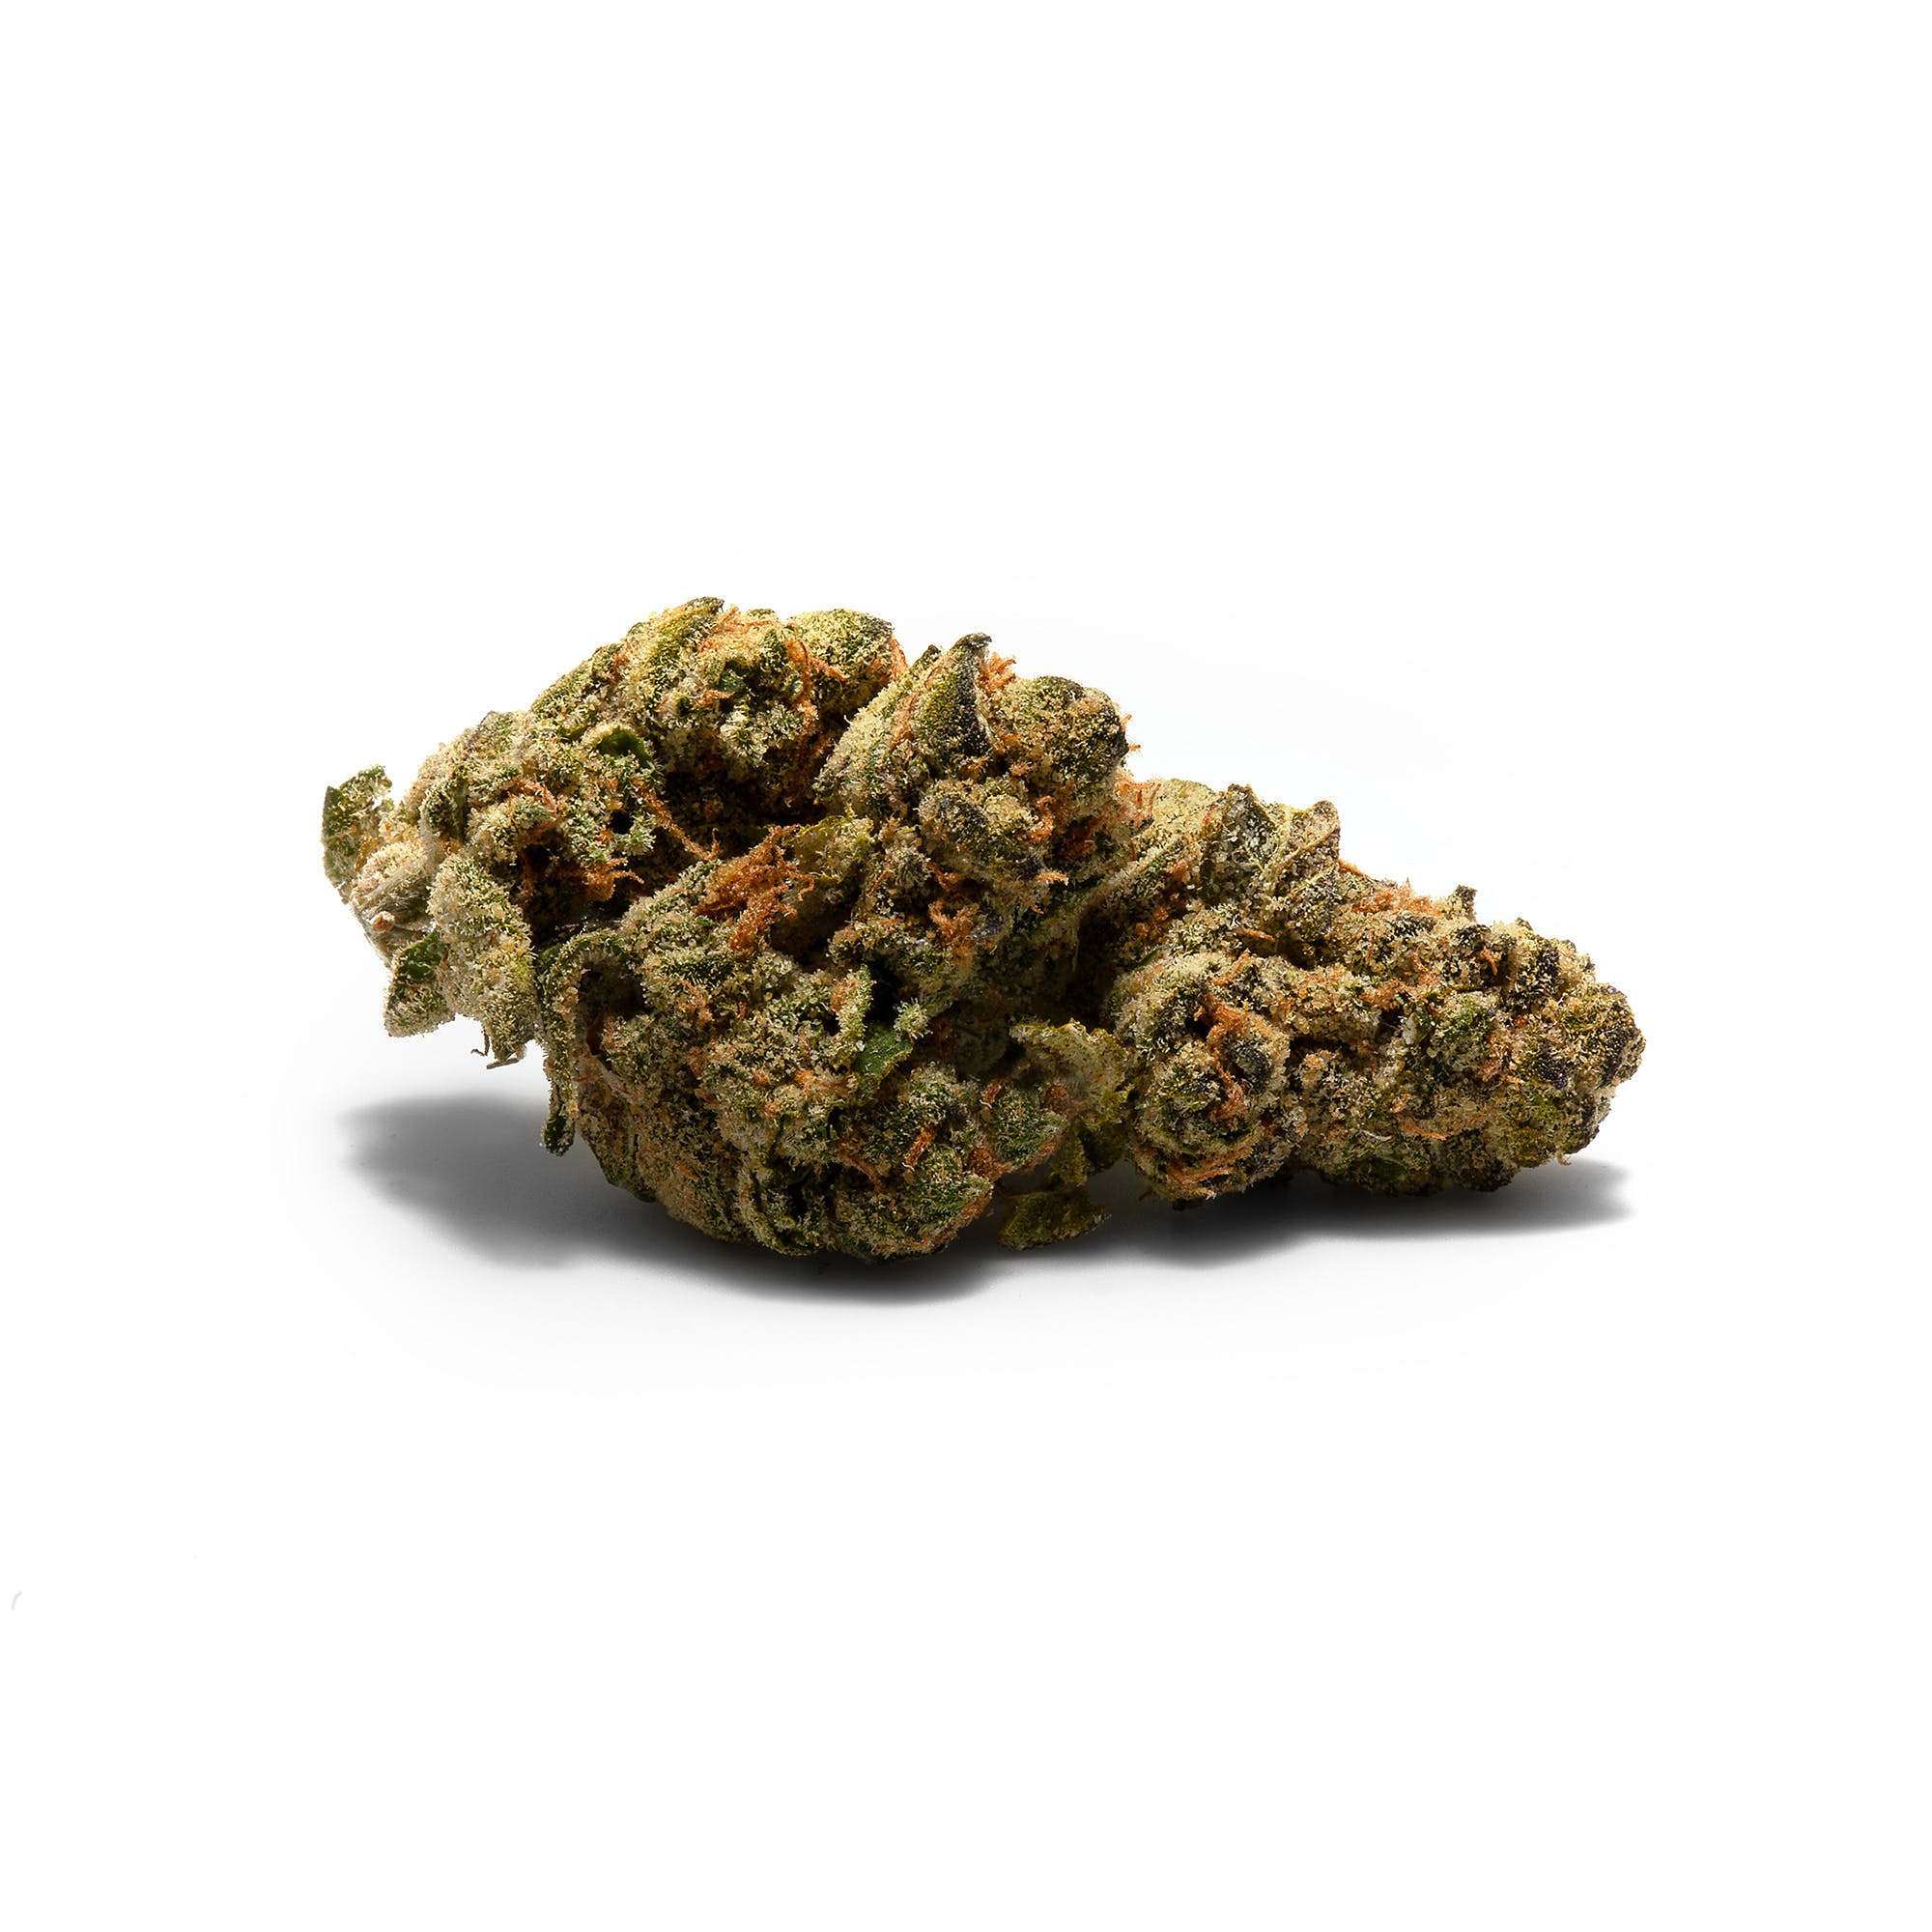 marijuana-dispensaries-reef-dispensaries-las-vegas-strip-in-las-vegas-pie-hoe